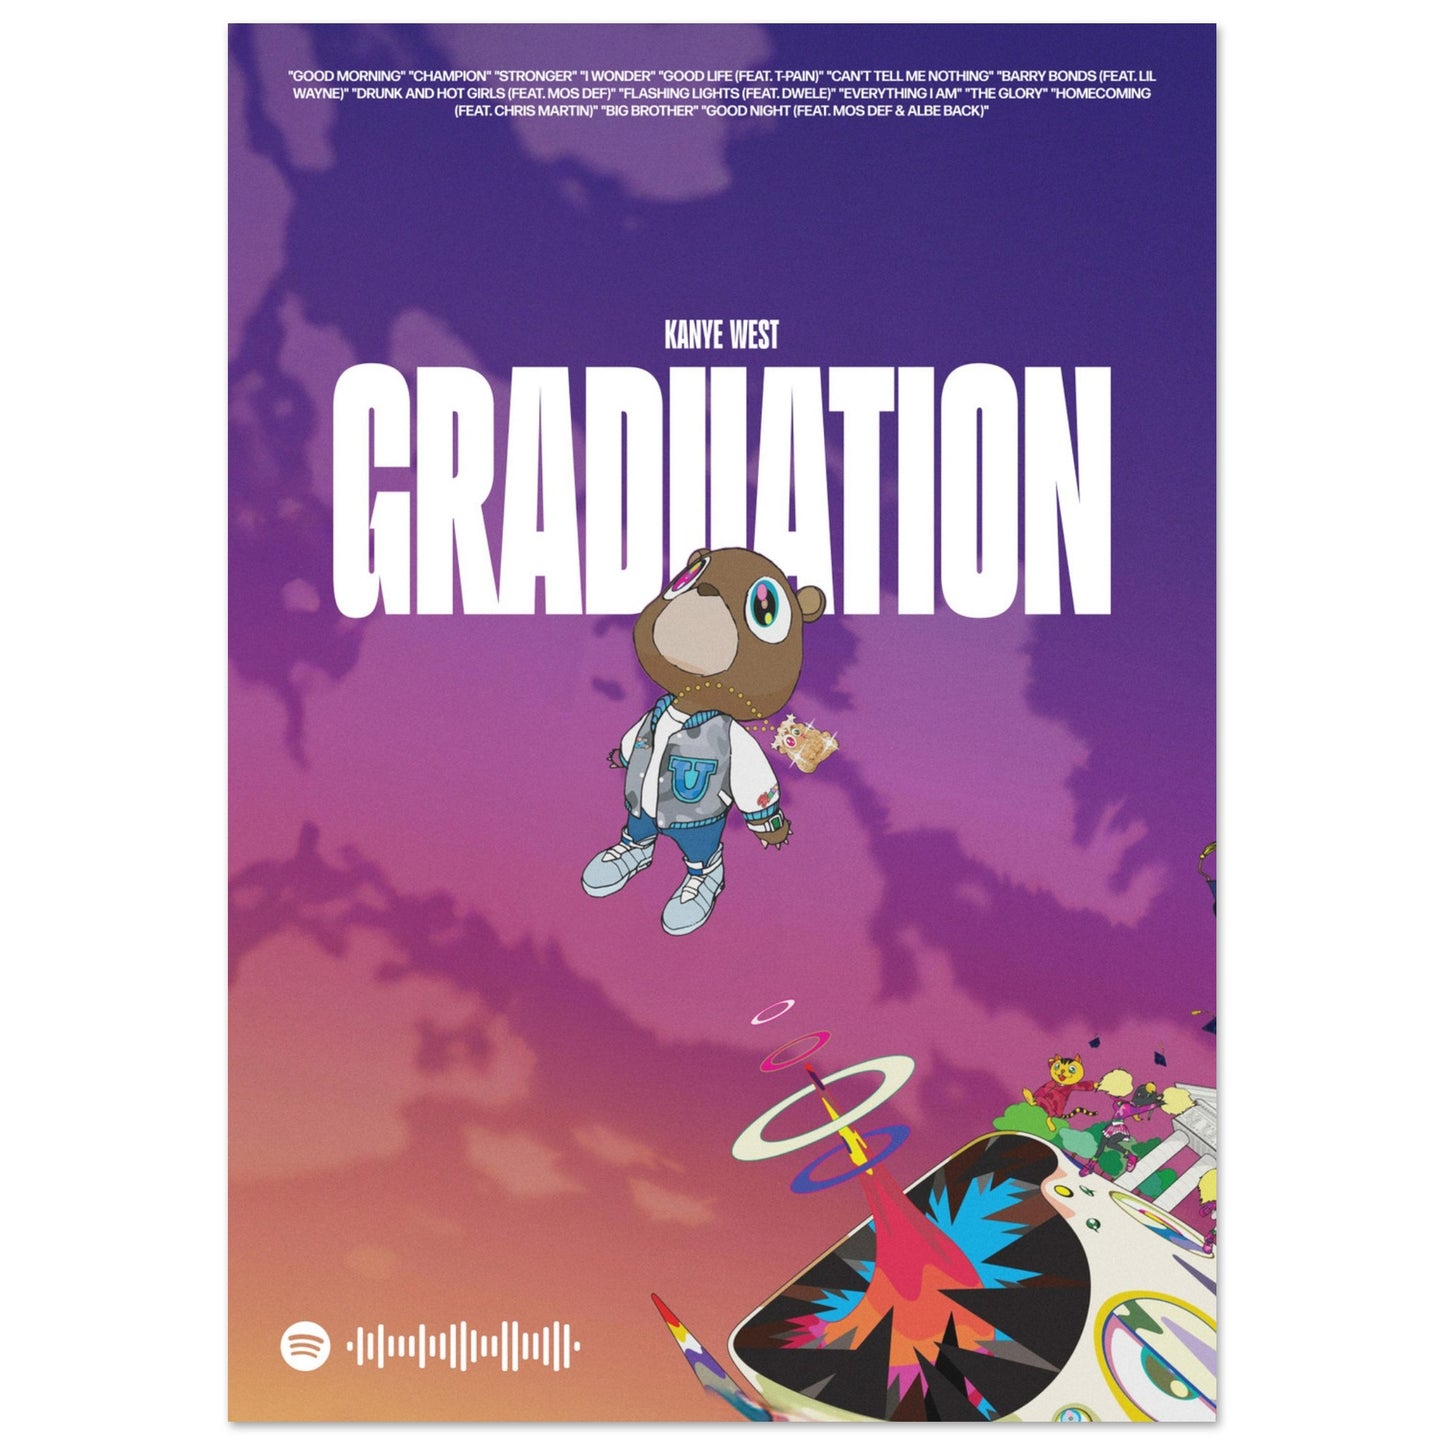 Kanye West Poster Graduation Kanye West Playlist Graduati - Inspire Uplift